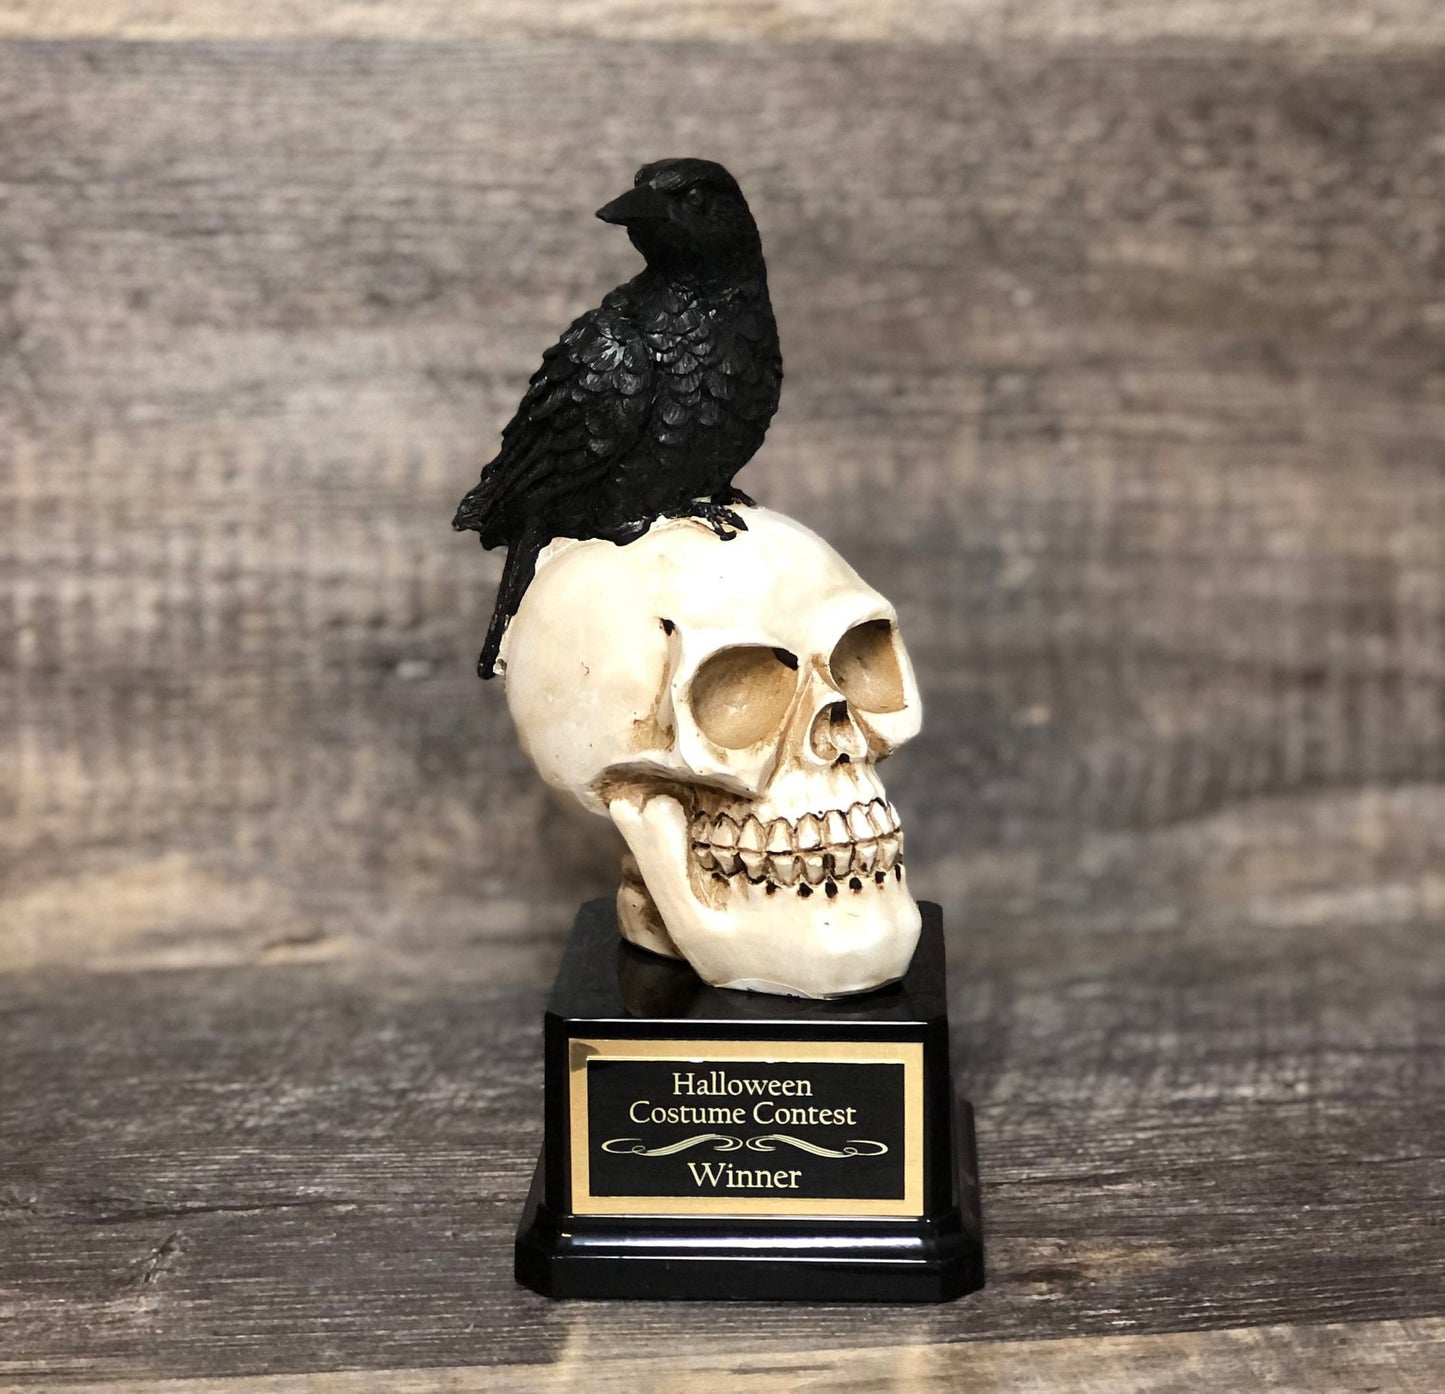 Halloween Trophy Raven & Skull Scariest Costume Contest Winner Best Costume Pumpkin Carving Halloween Decor Dia De Los Muertos